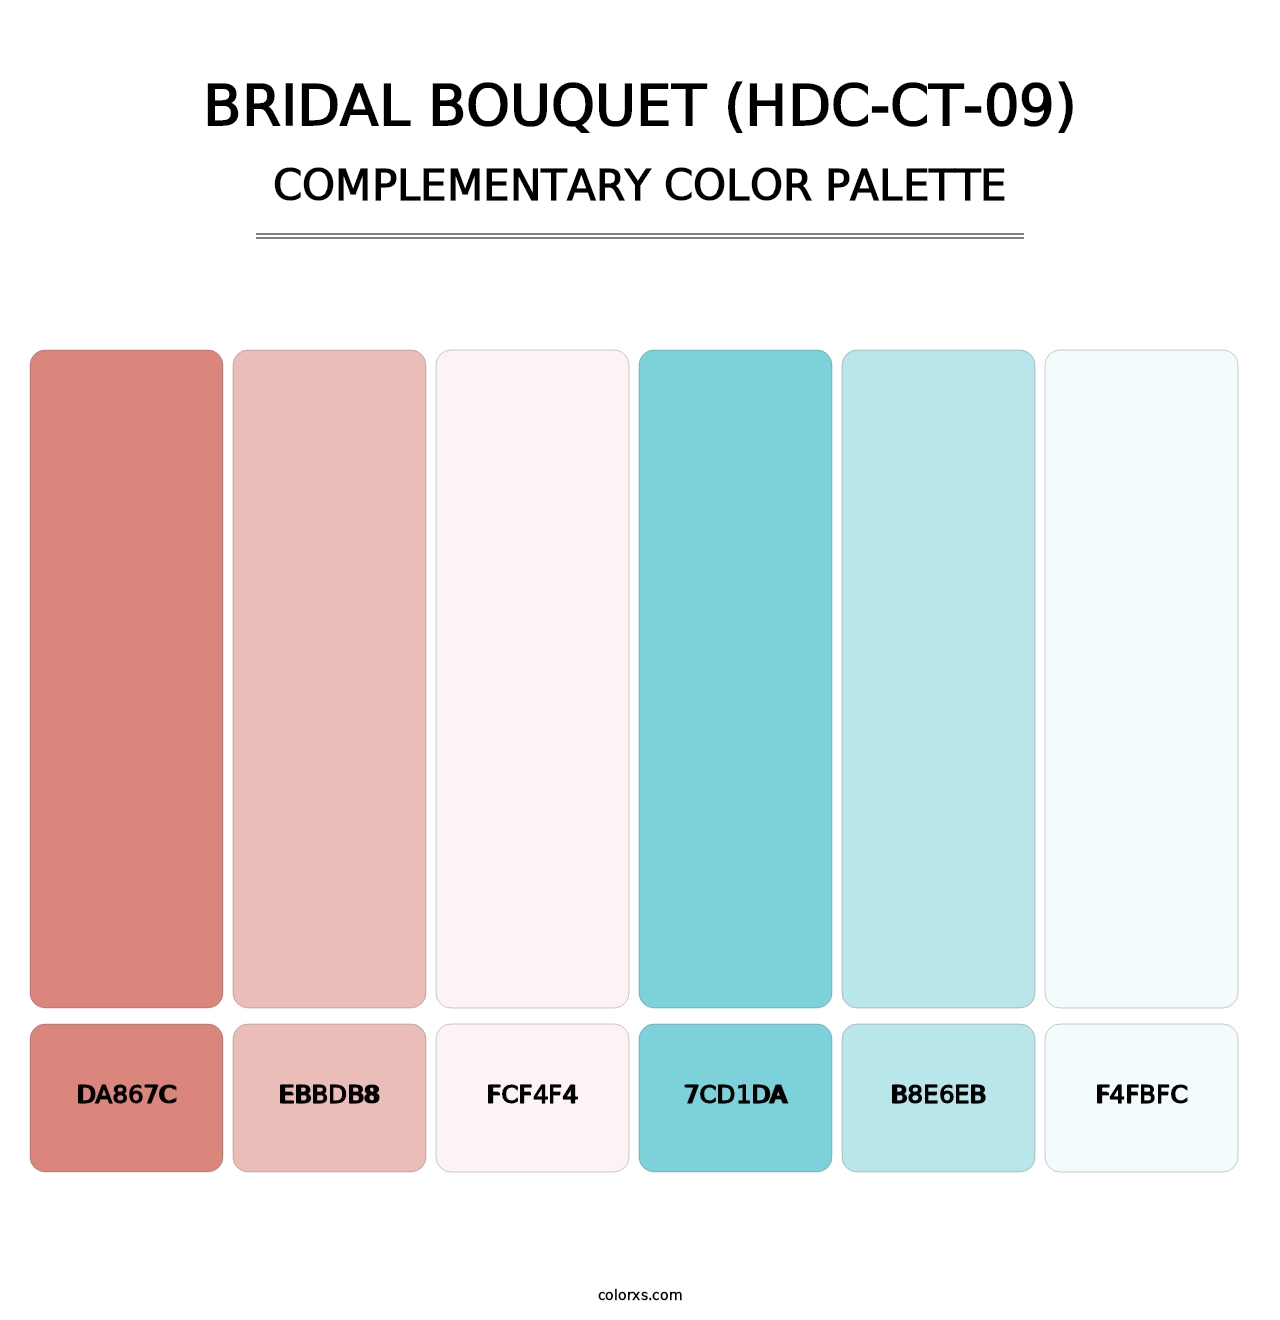 Bridal Bouquet (HDC-CT-09) - Complementary Color Palette